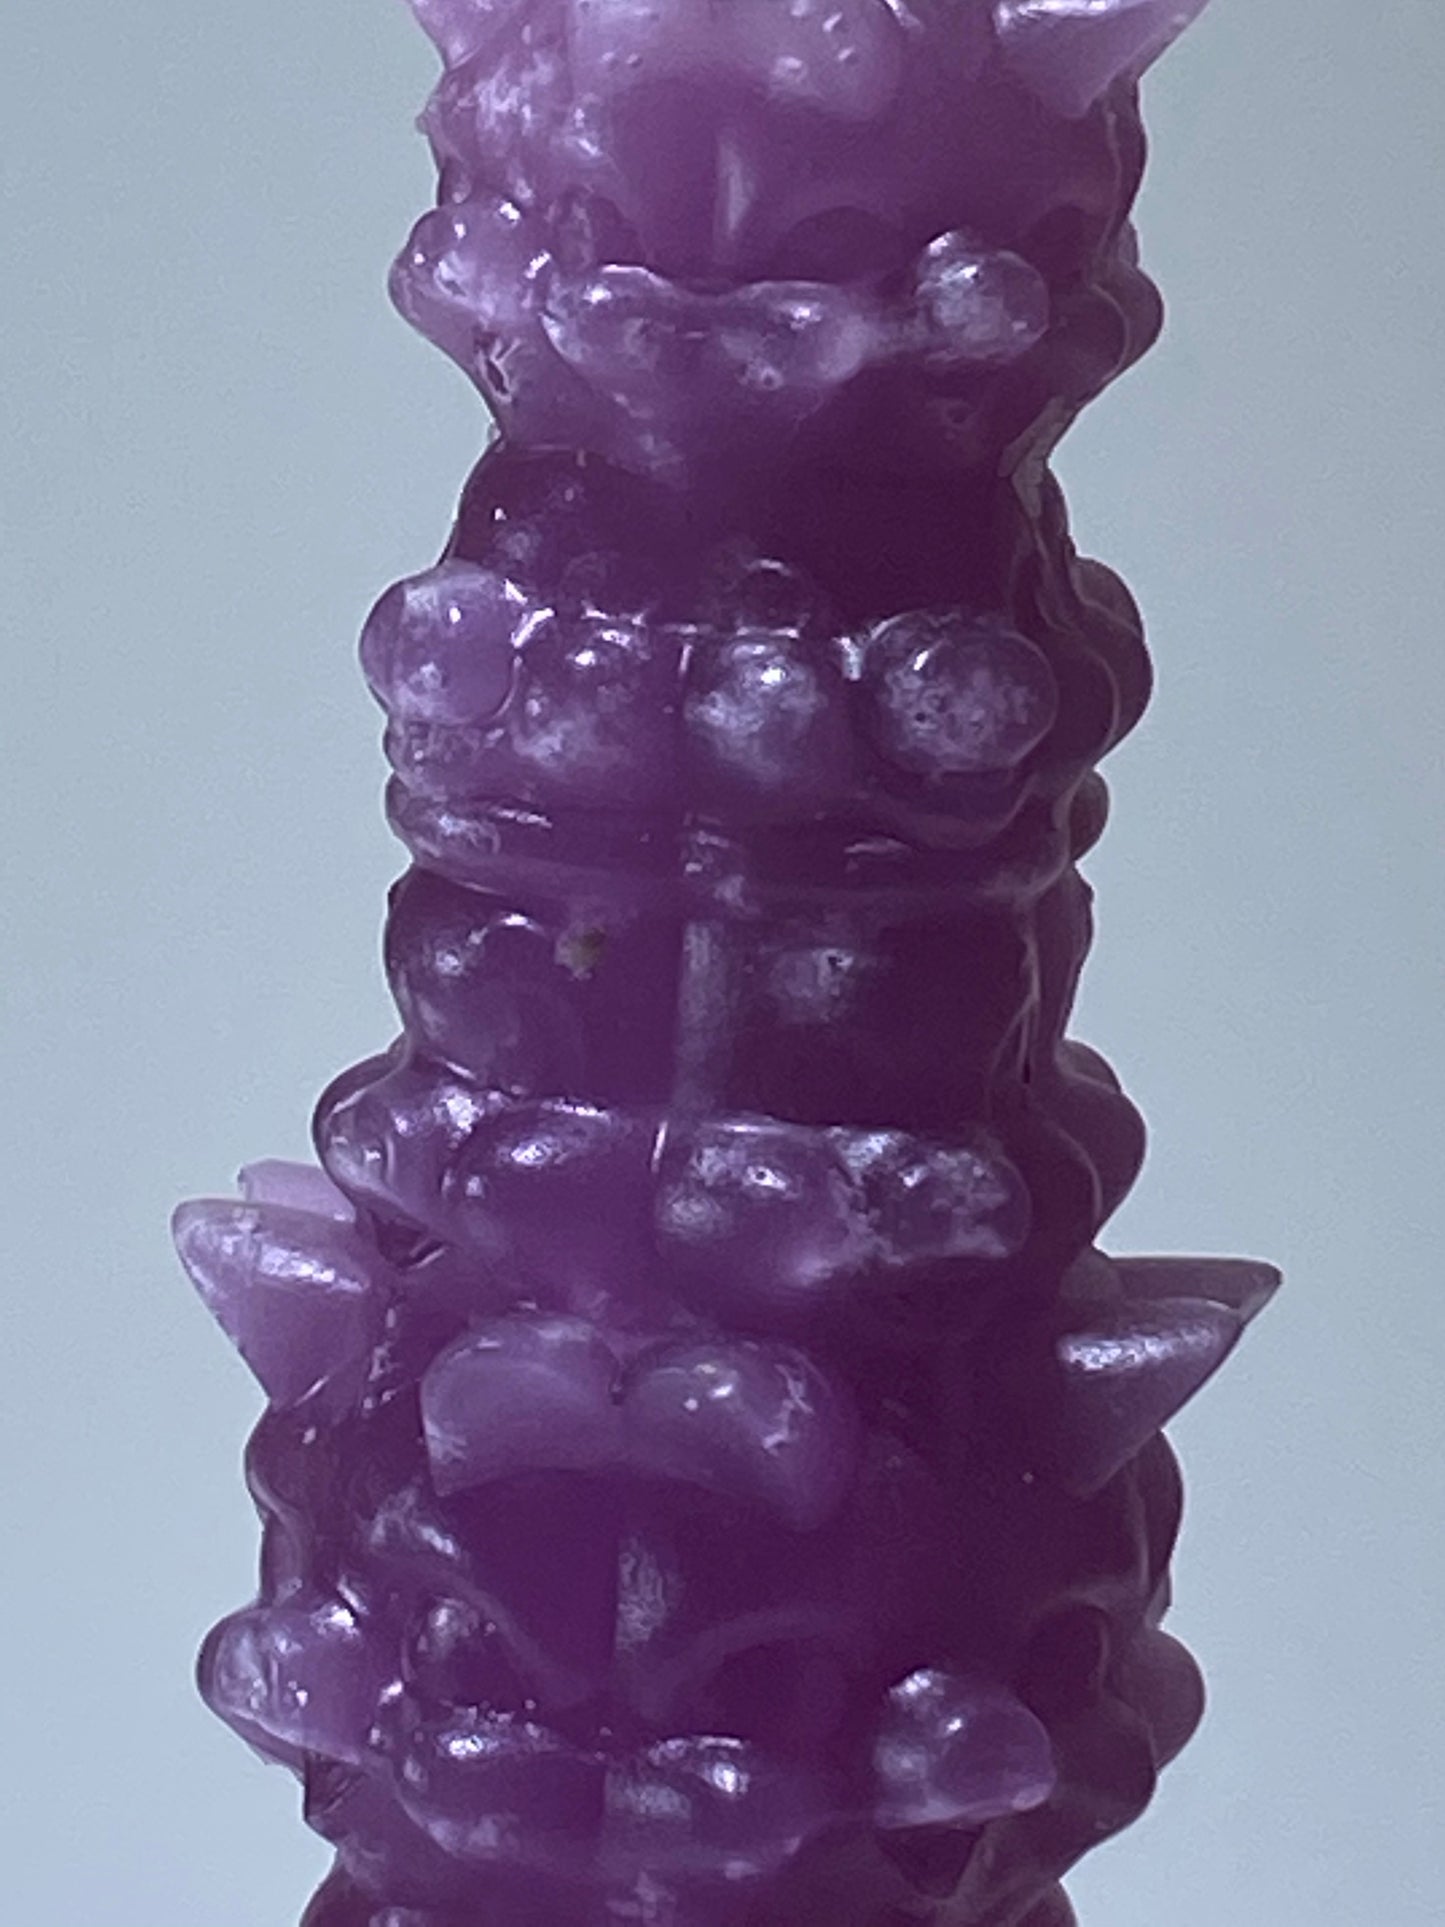 Zimot Novelty Candles: Purple/Yellow